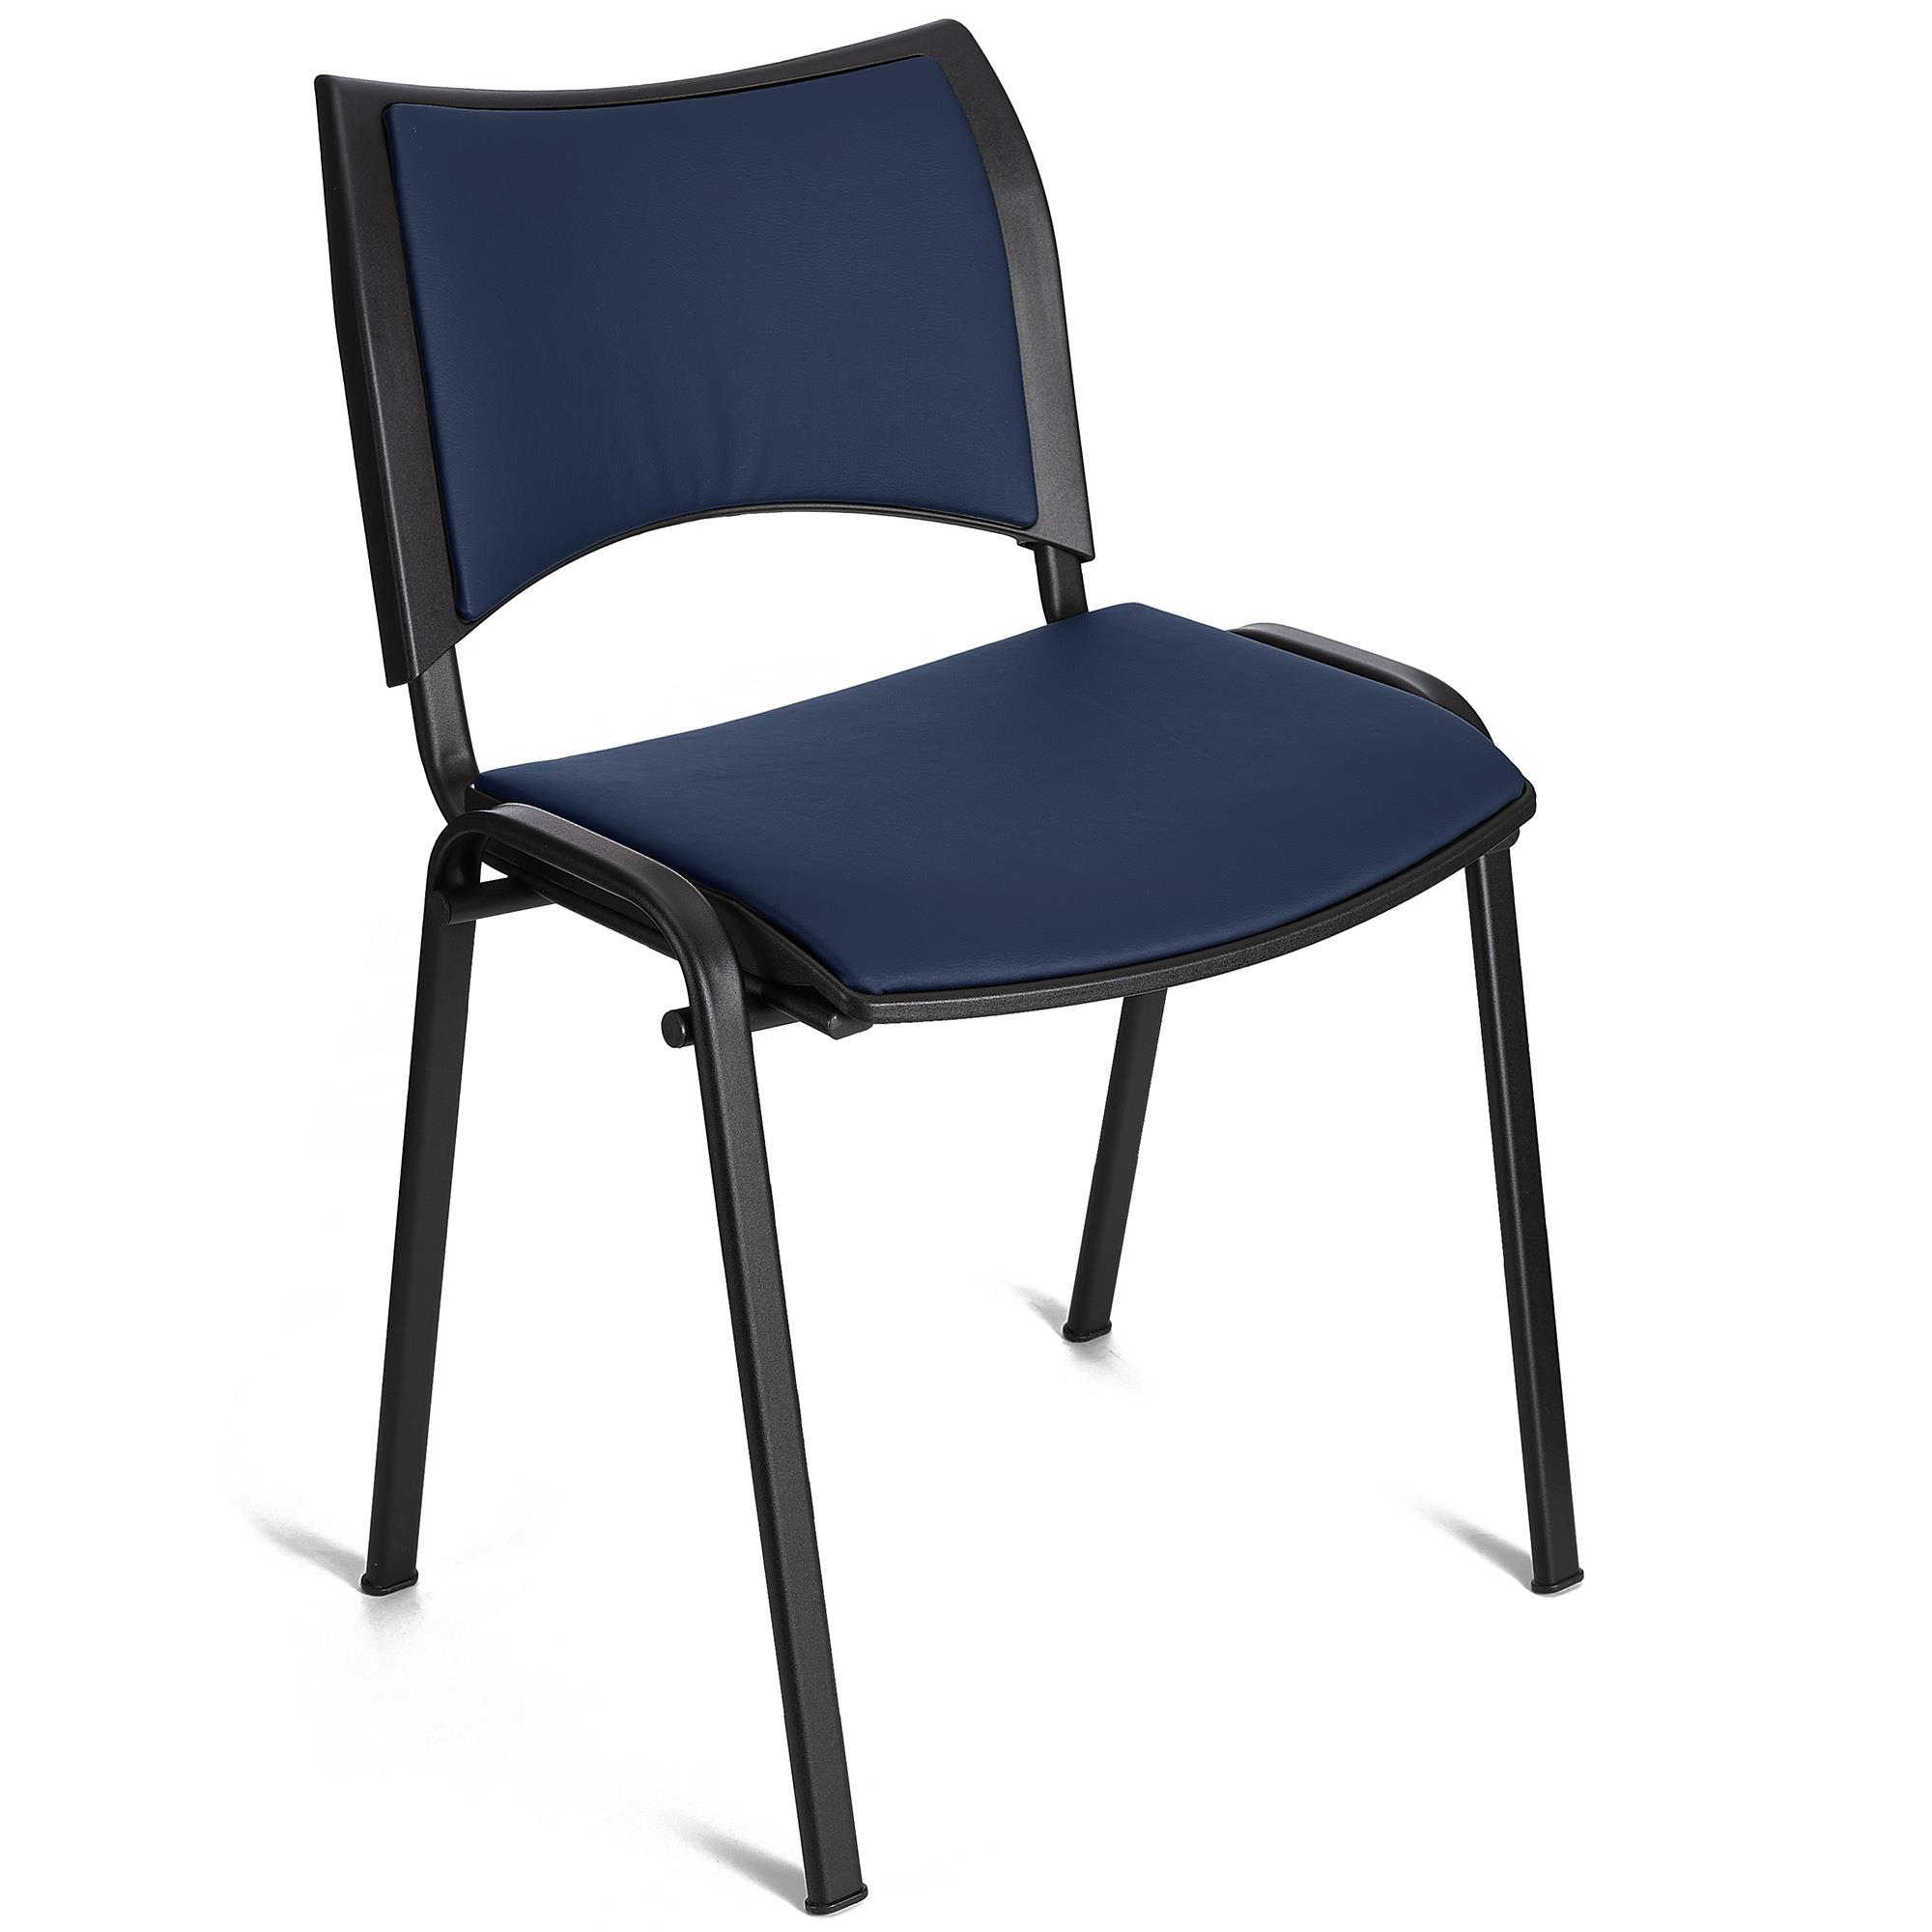 Cadeira de Visita ROMEL PELE, Prática e Empilhável, Pernas Pretas, Azul